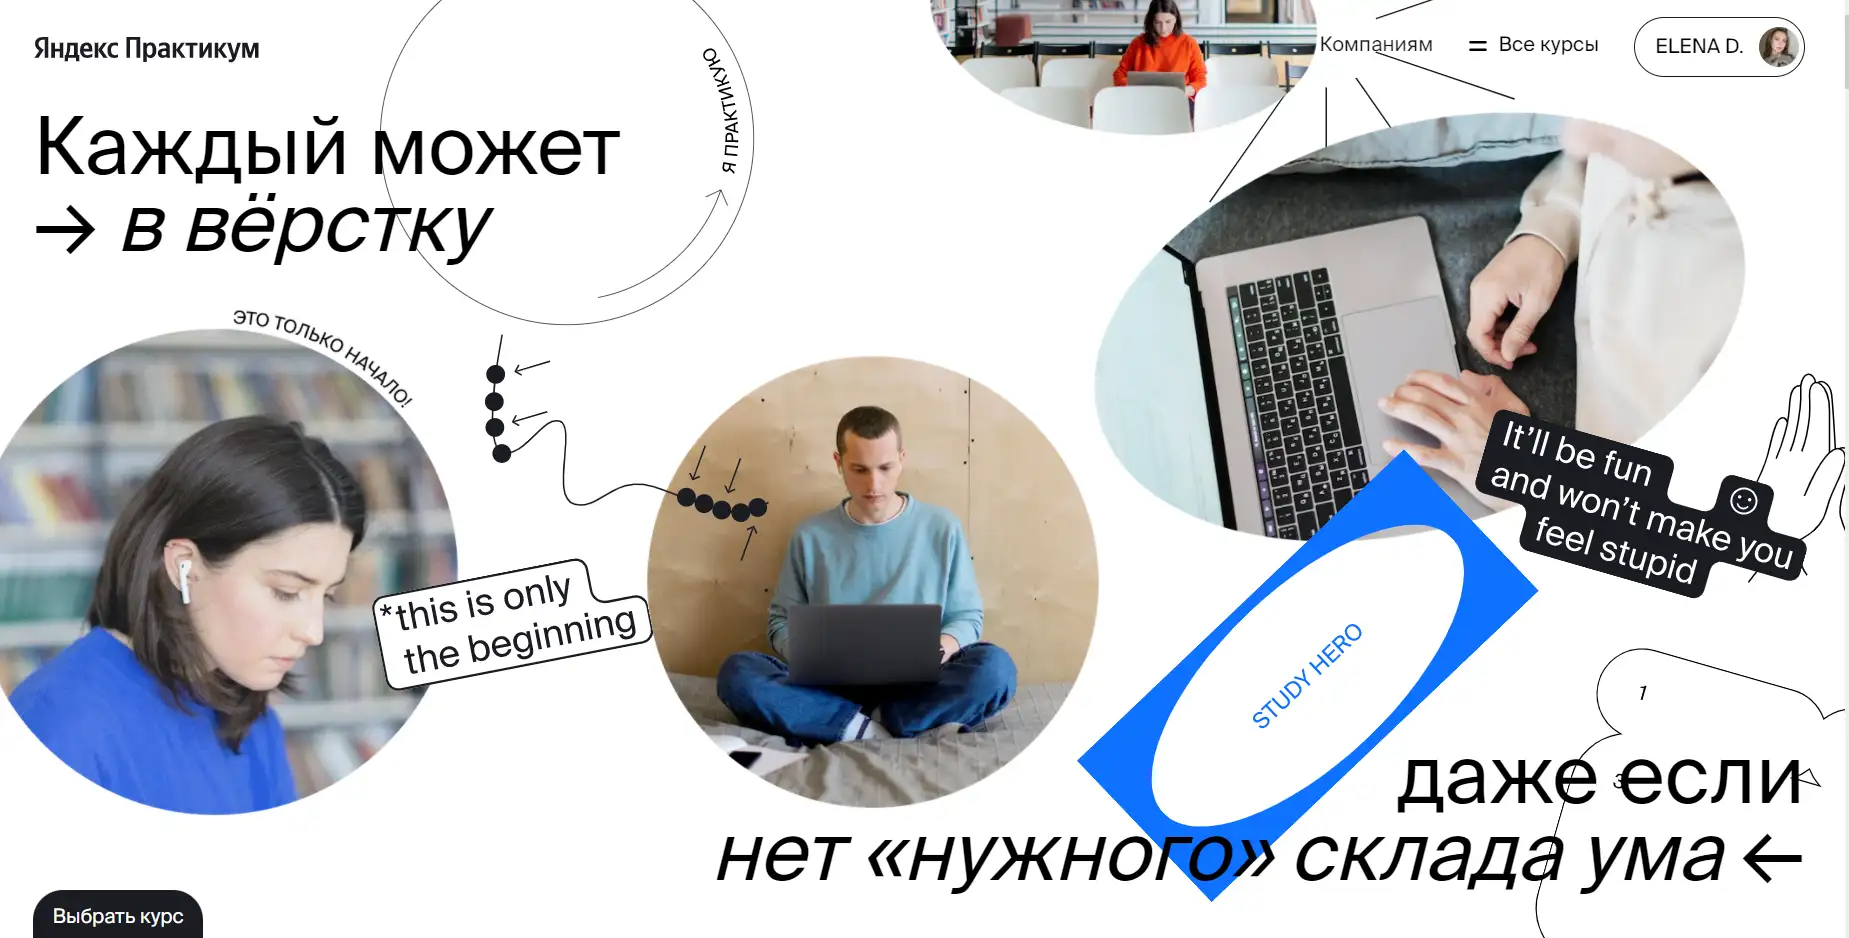 Яндекс.Практикум вход в личный кабинет и регистрация